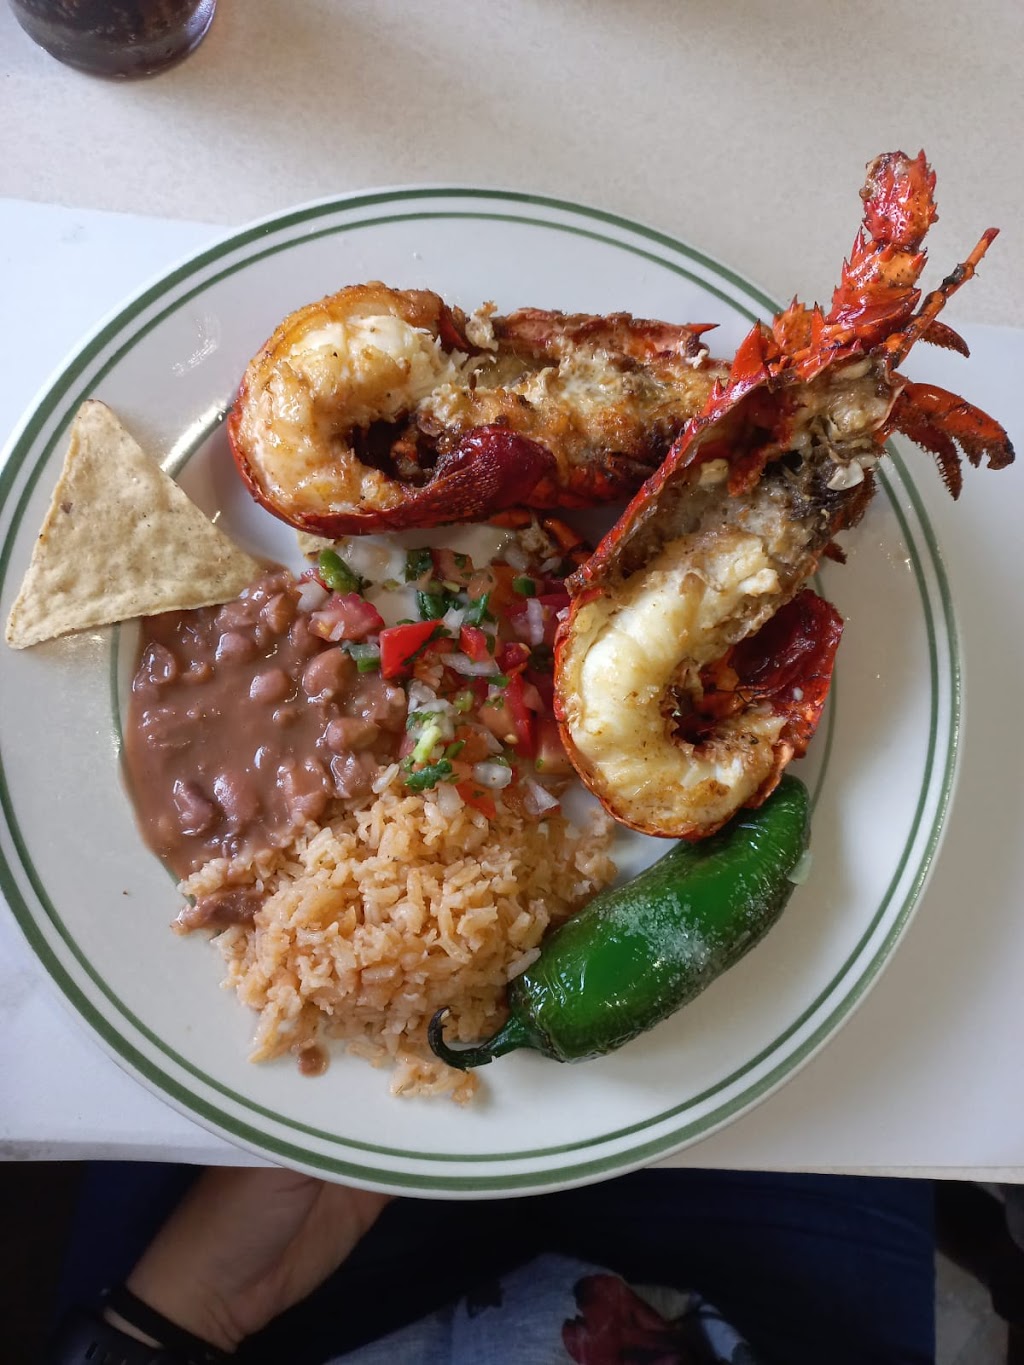 Restaurant Puerto Nuevo #1 | Arpón, 22710 Puerto Nuevo, B.C., Mexico | Phone: 661 614 1411